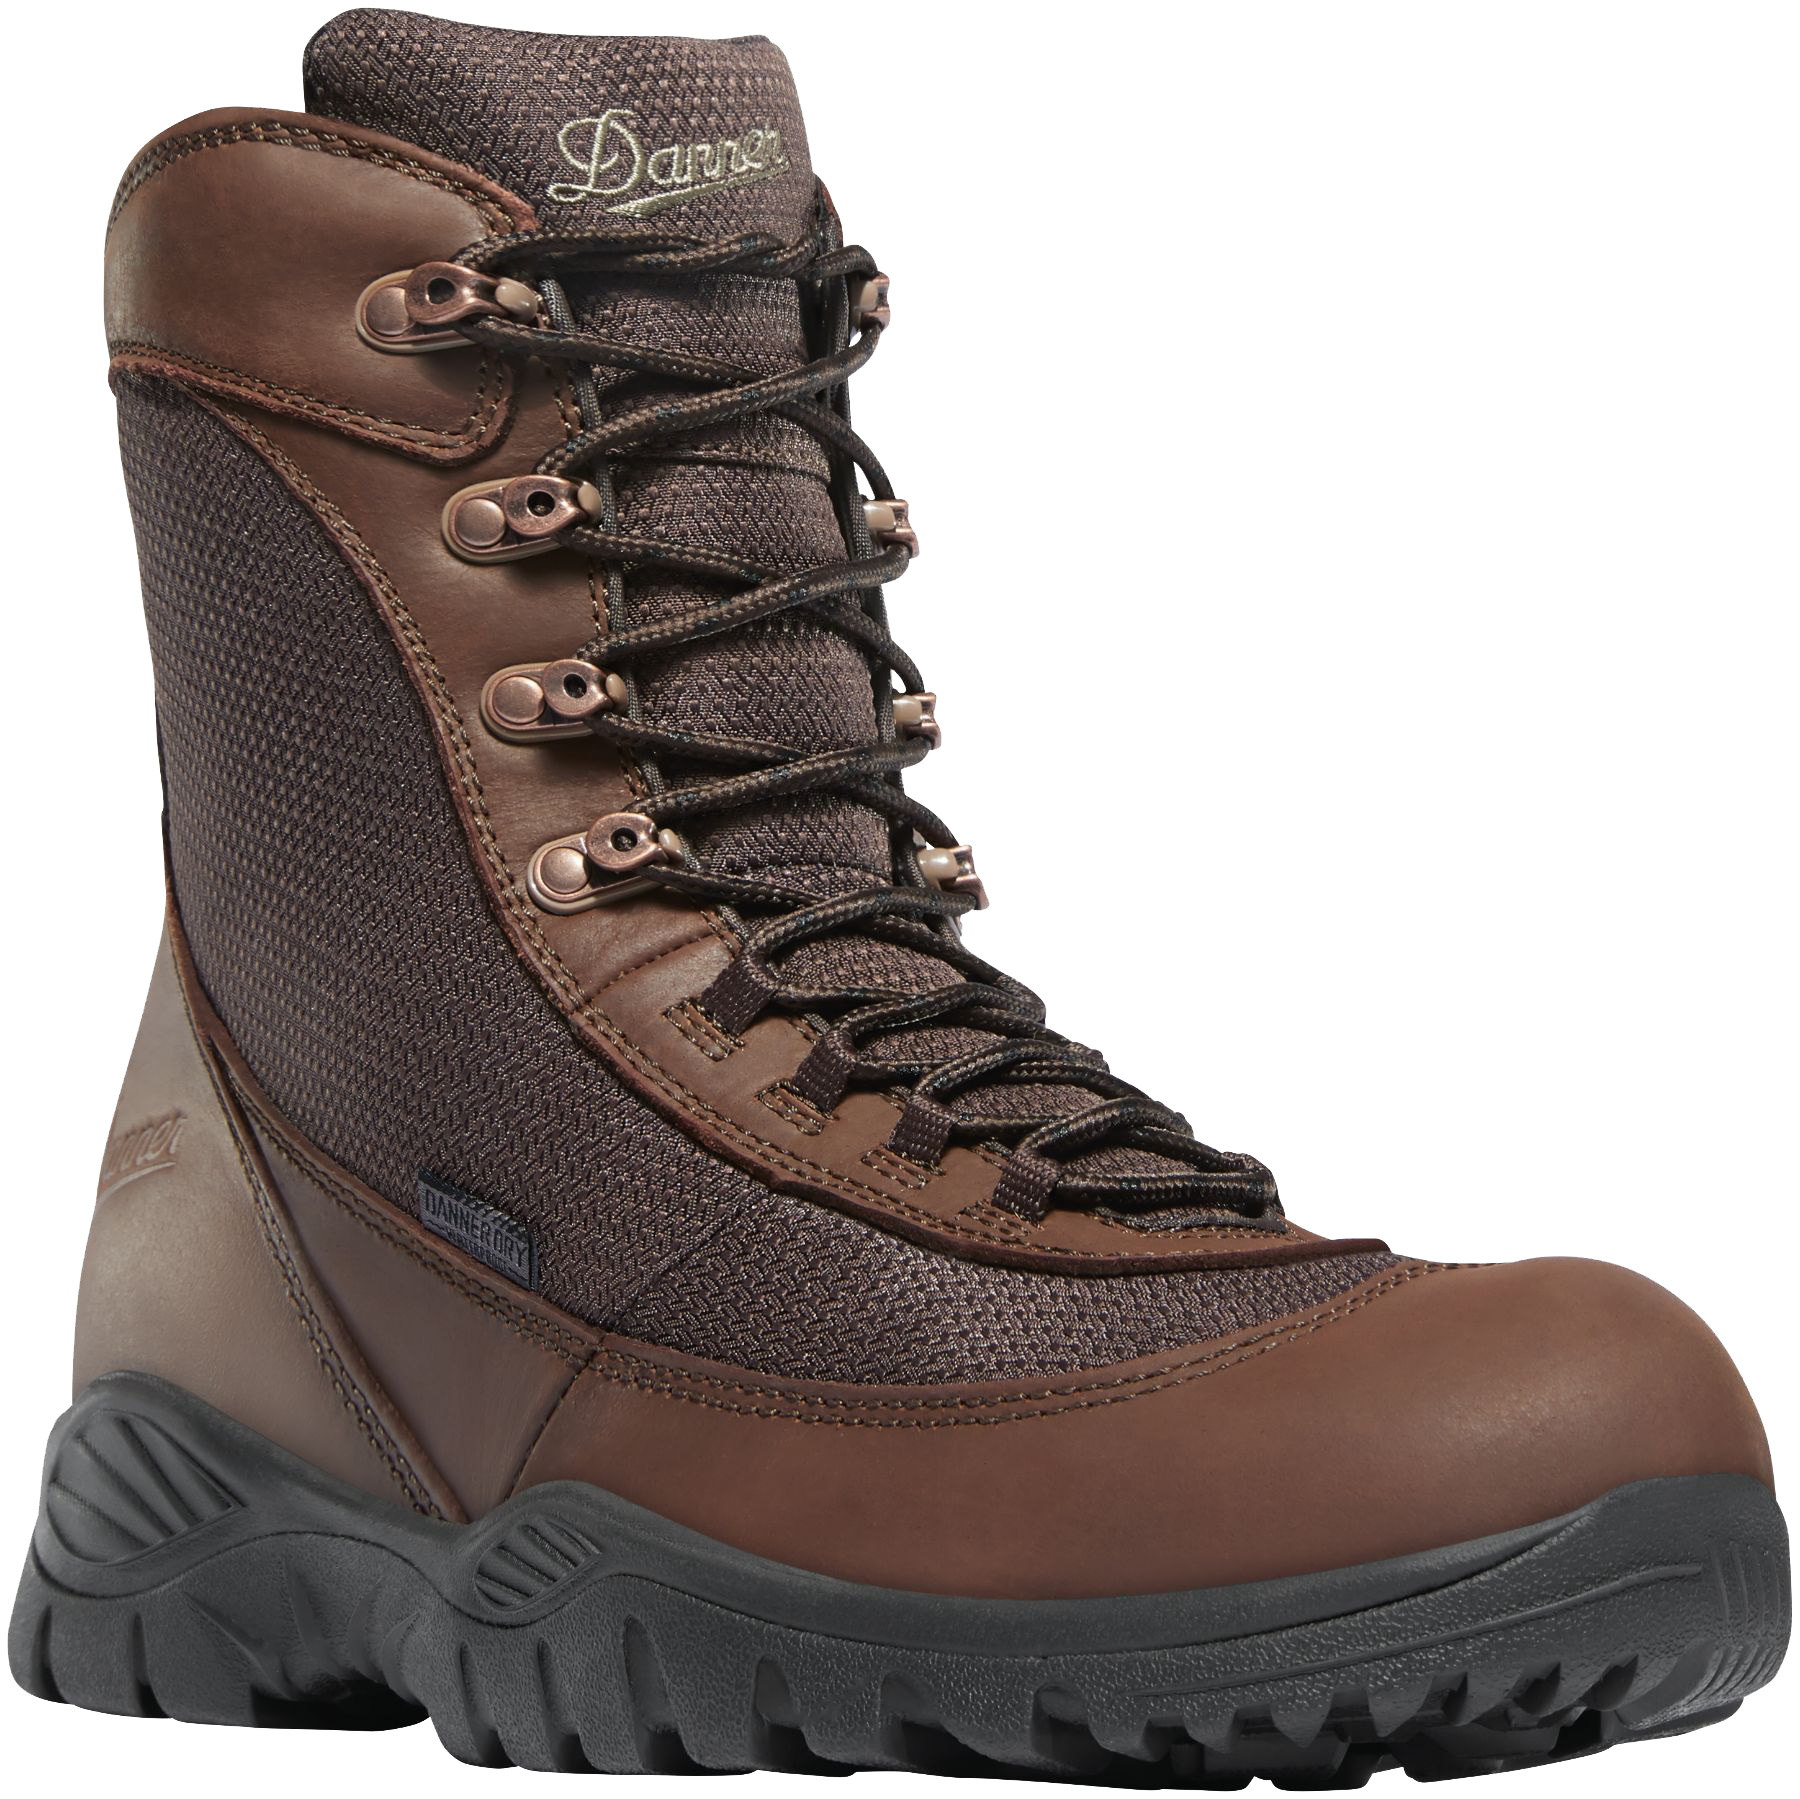 Danner Men's Element 8in Waterproof Hunting Boots - Brown 11.5 -  47130-11.5EE